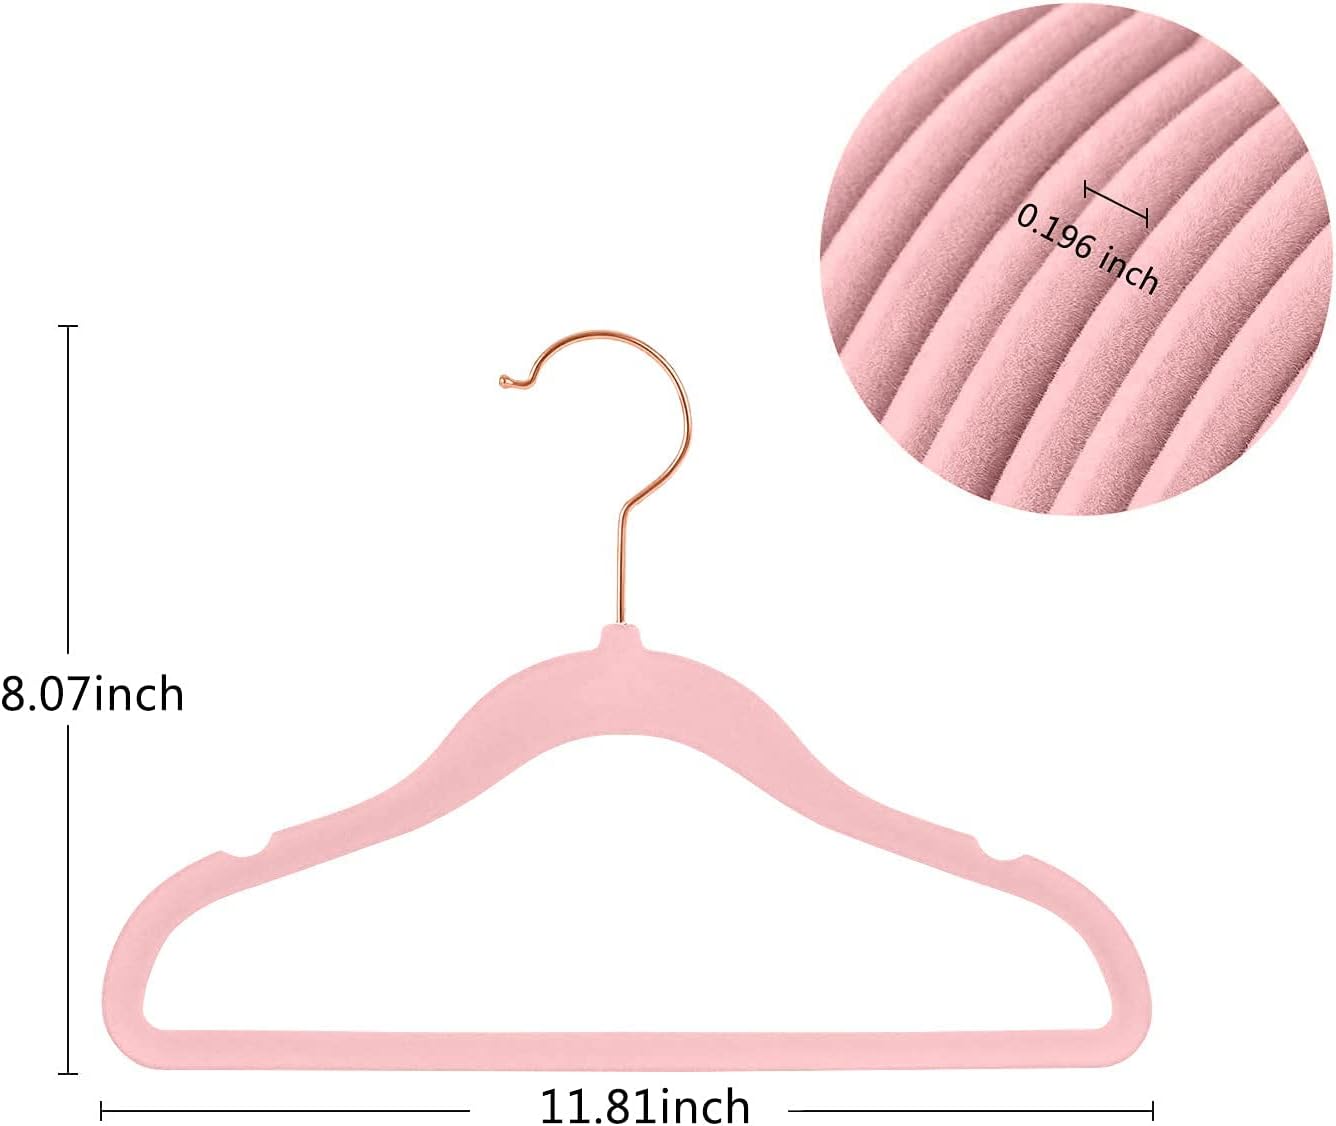 Ganchos de terciopelo antideslizantes para ropa de bebé, 29 cm, paquete de 50 perchas color rosa